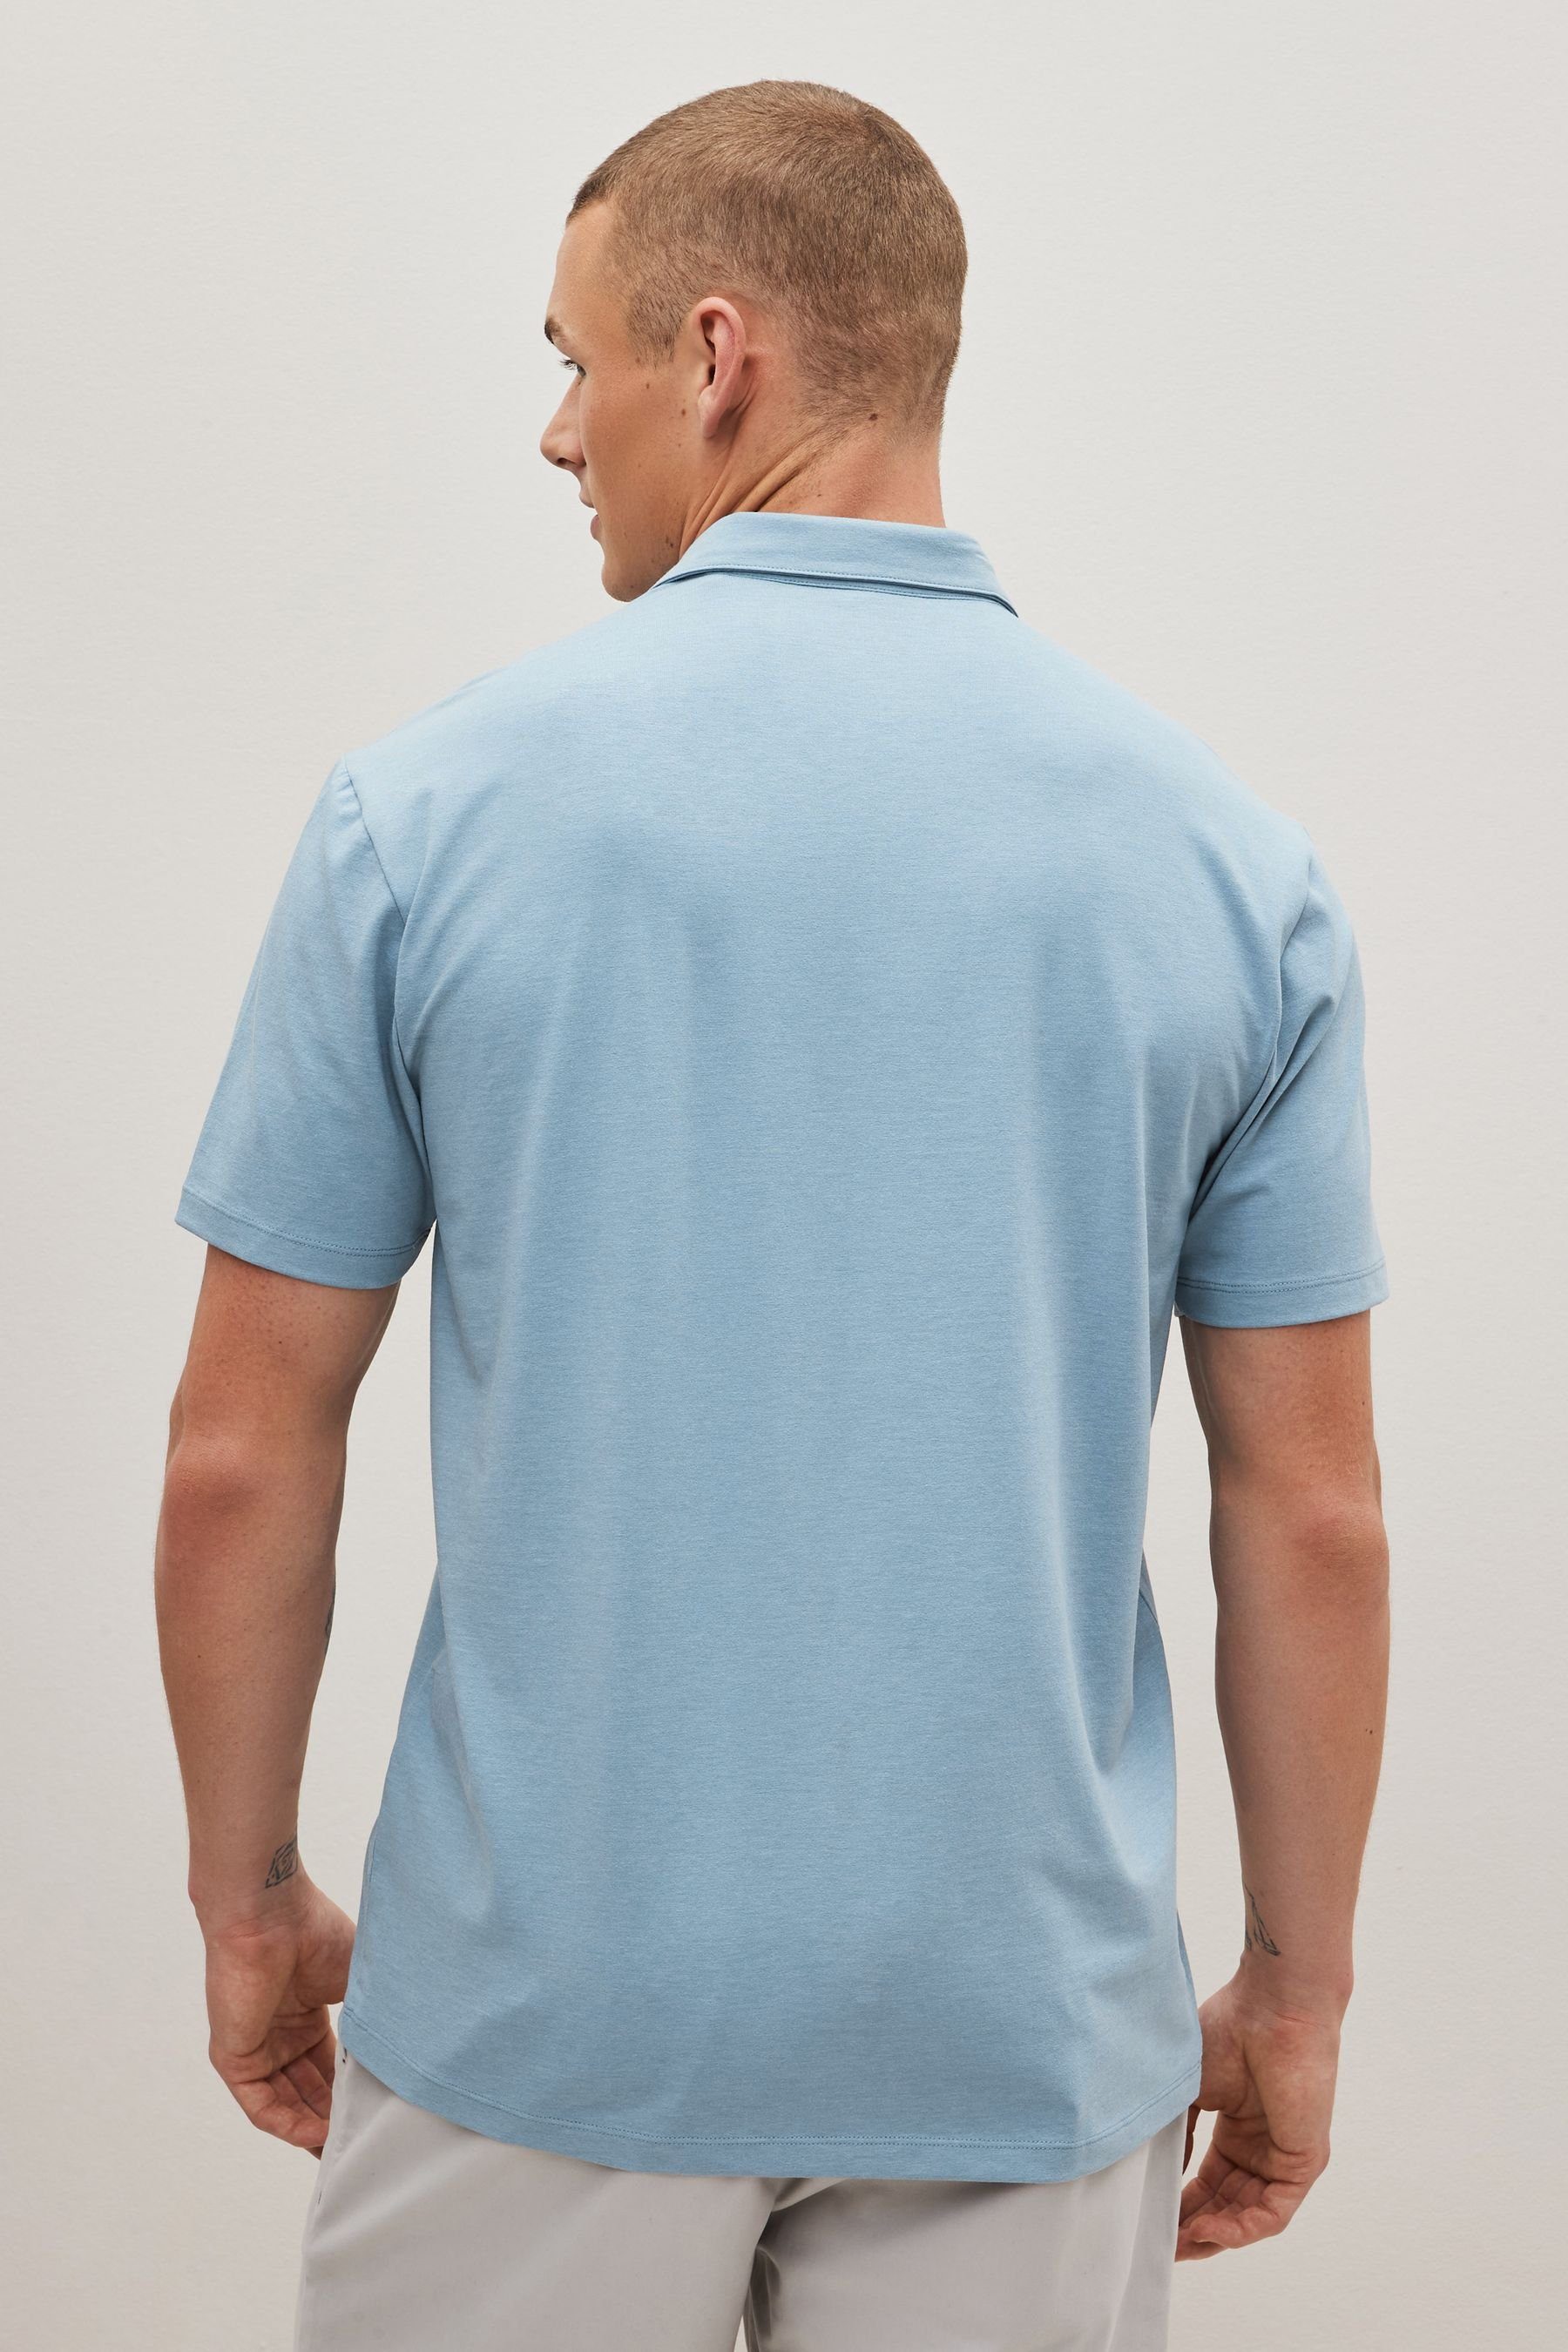 3er-Pack Mix (3-tlg) Jersey Poloshirt Next aus im Blue Poloshirts